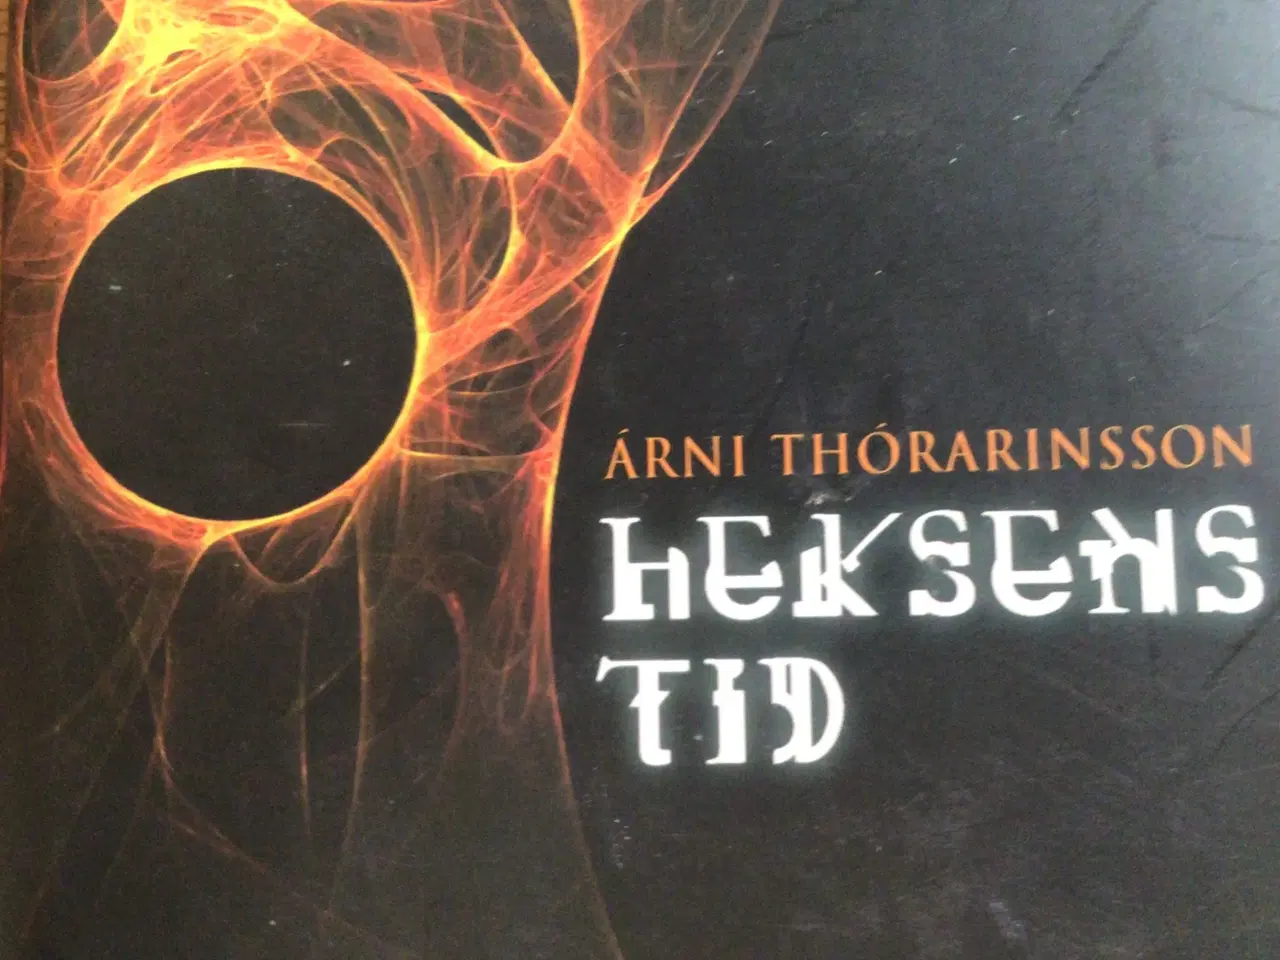 Billede 1 - rni Thórarinsson : Heksens tid